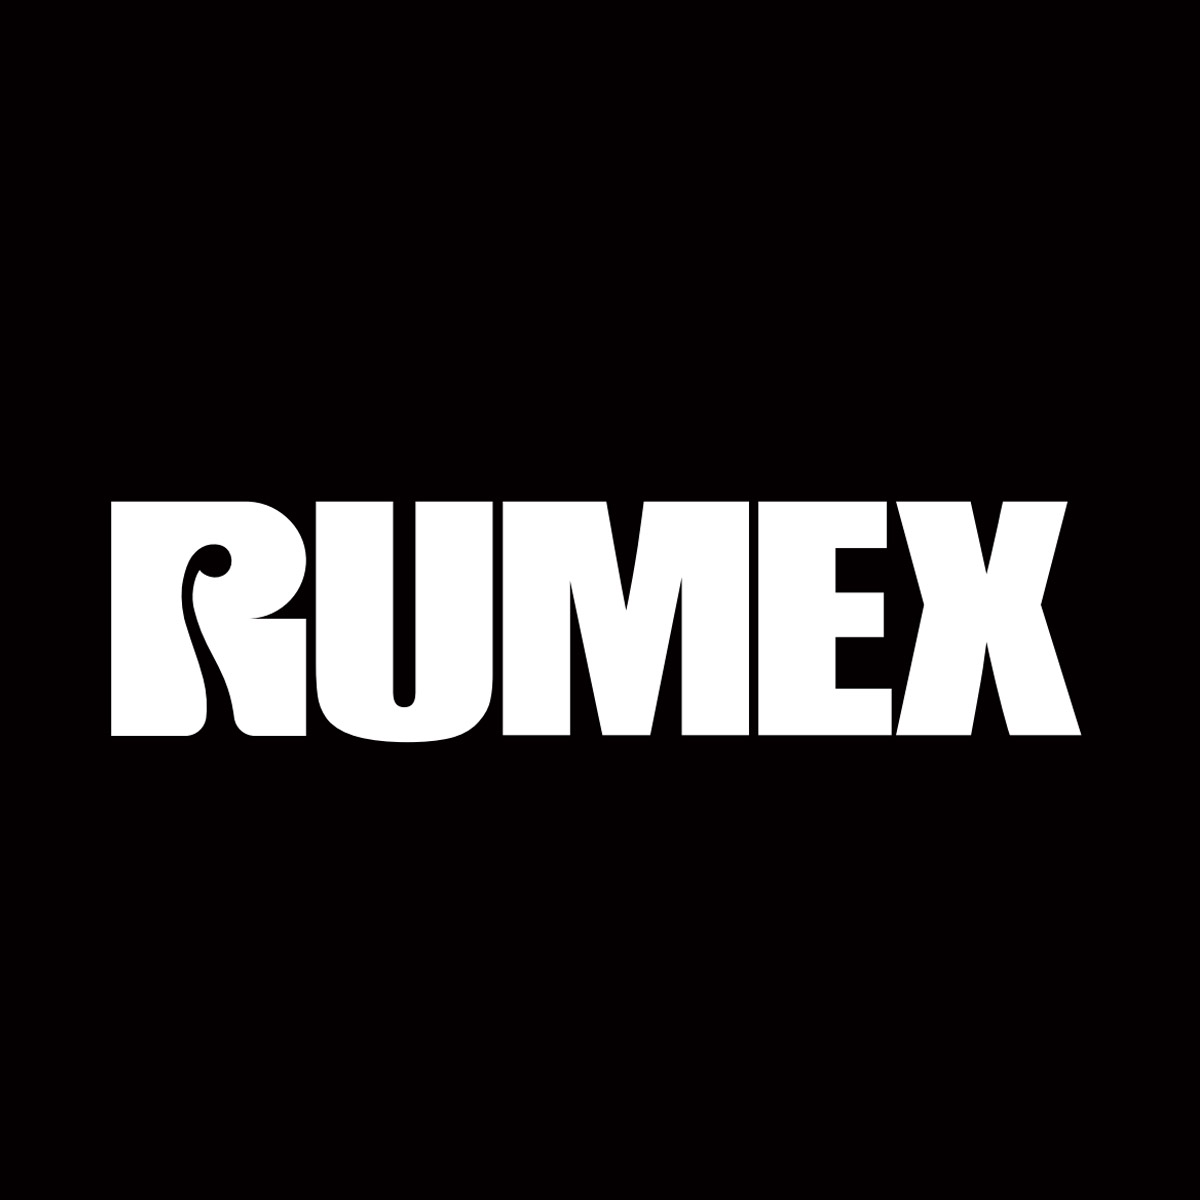 RUMEX